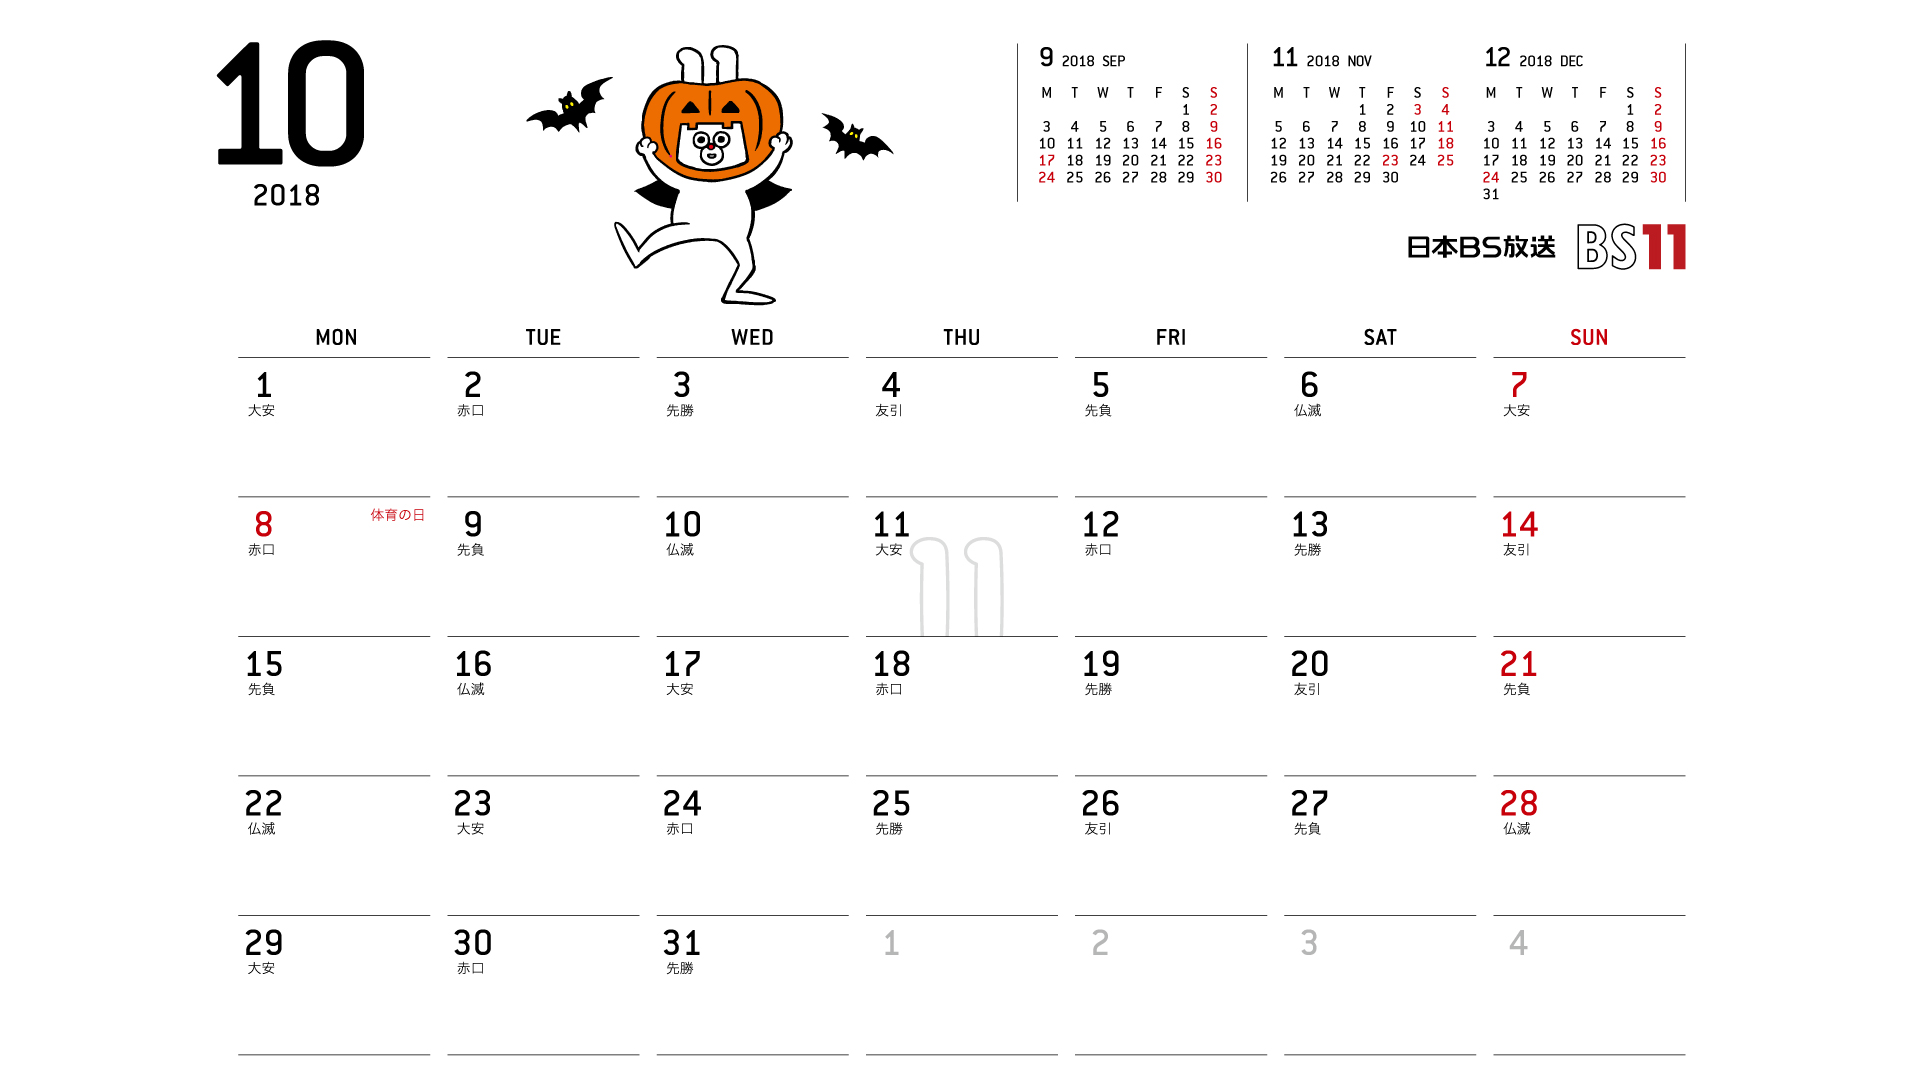 じゅういっちゃんのデジタルカレンダー18年10月 Bs11 イレブン いつでも無料放送